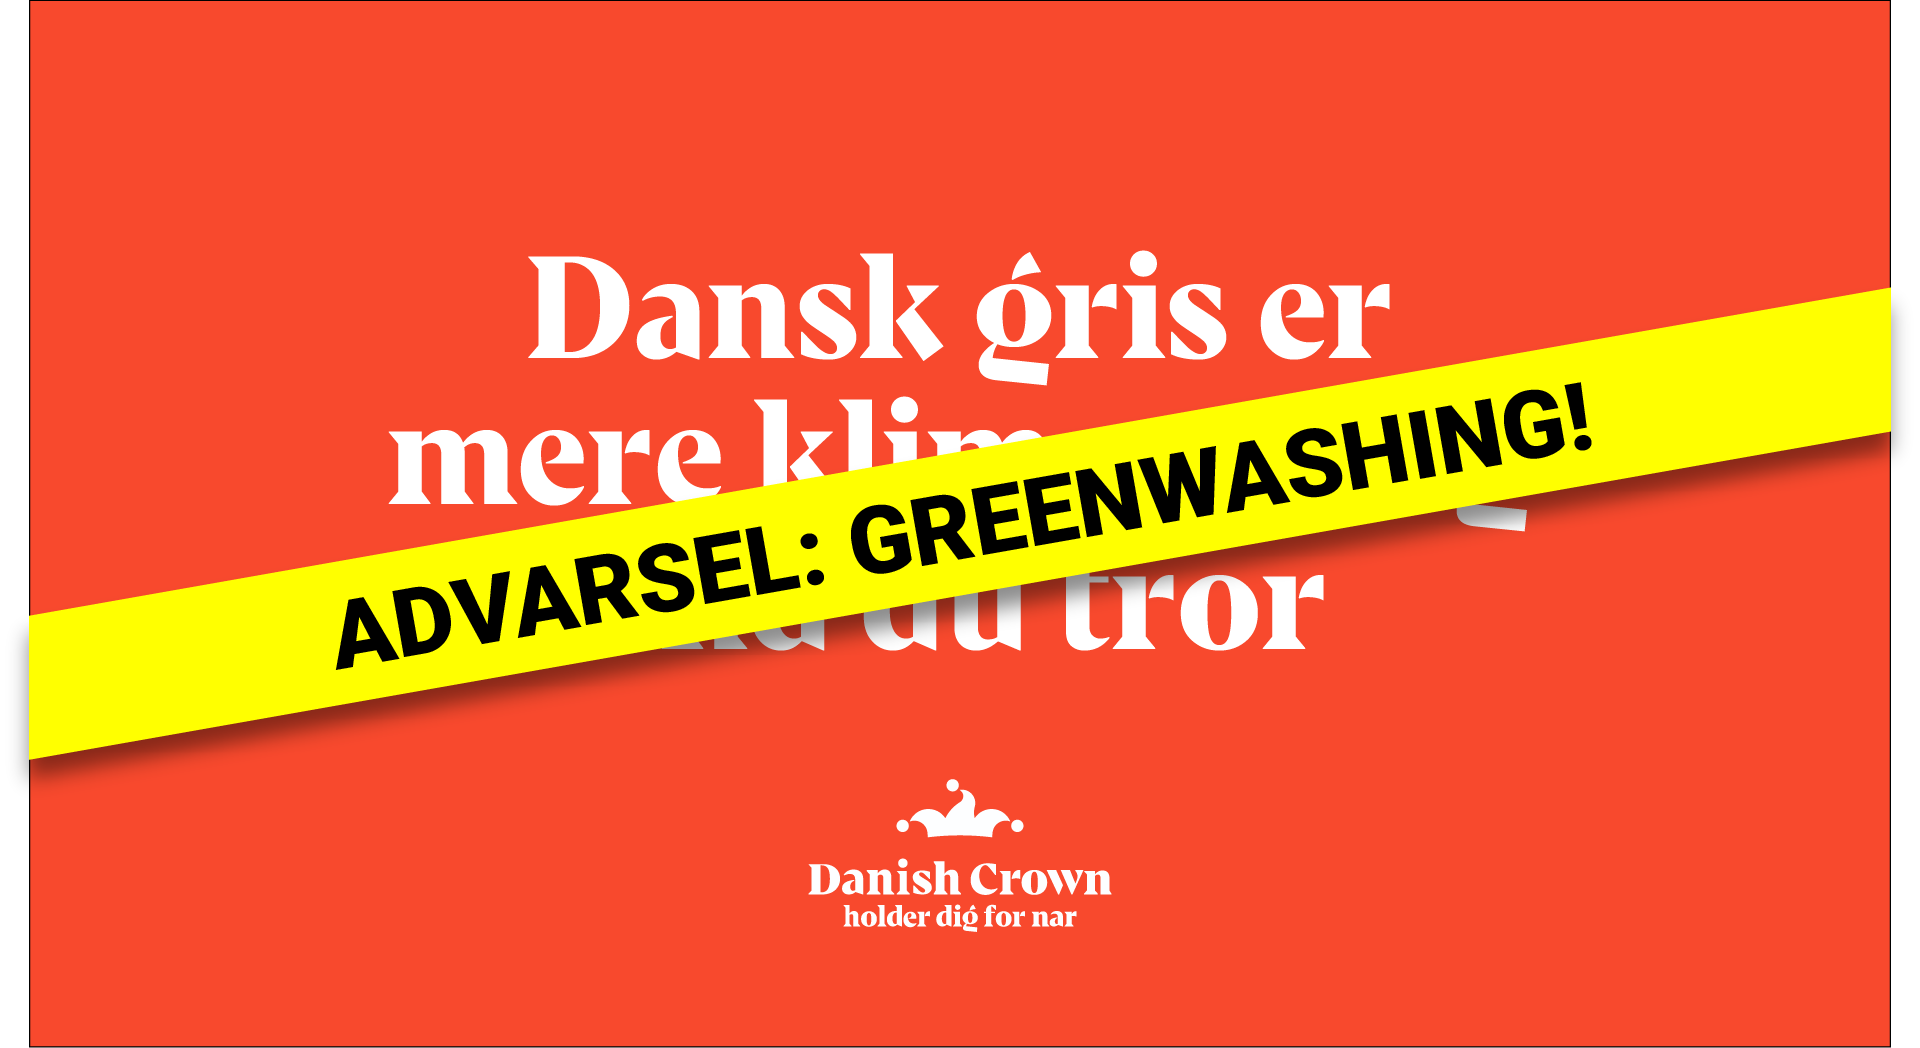 GREENWASHING: Dansk gris er mere klimavenligt end du tror